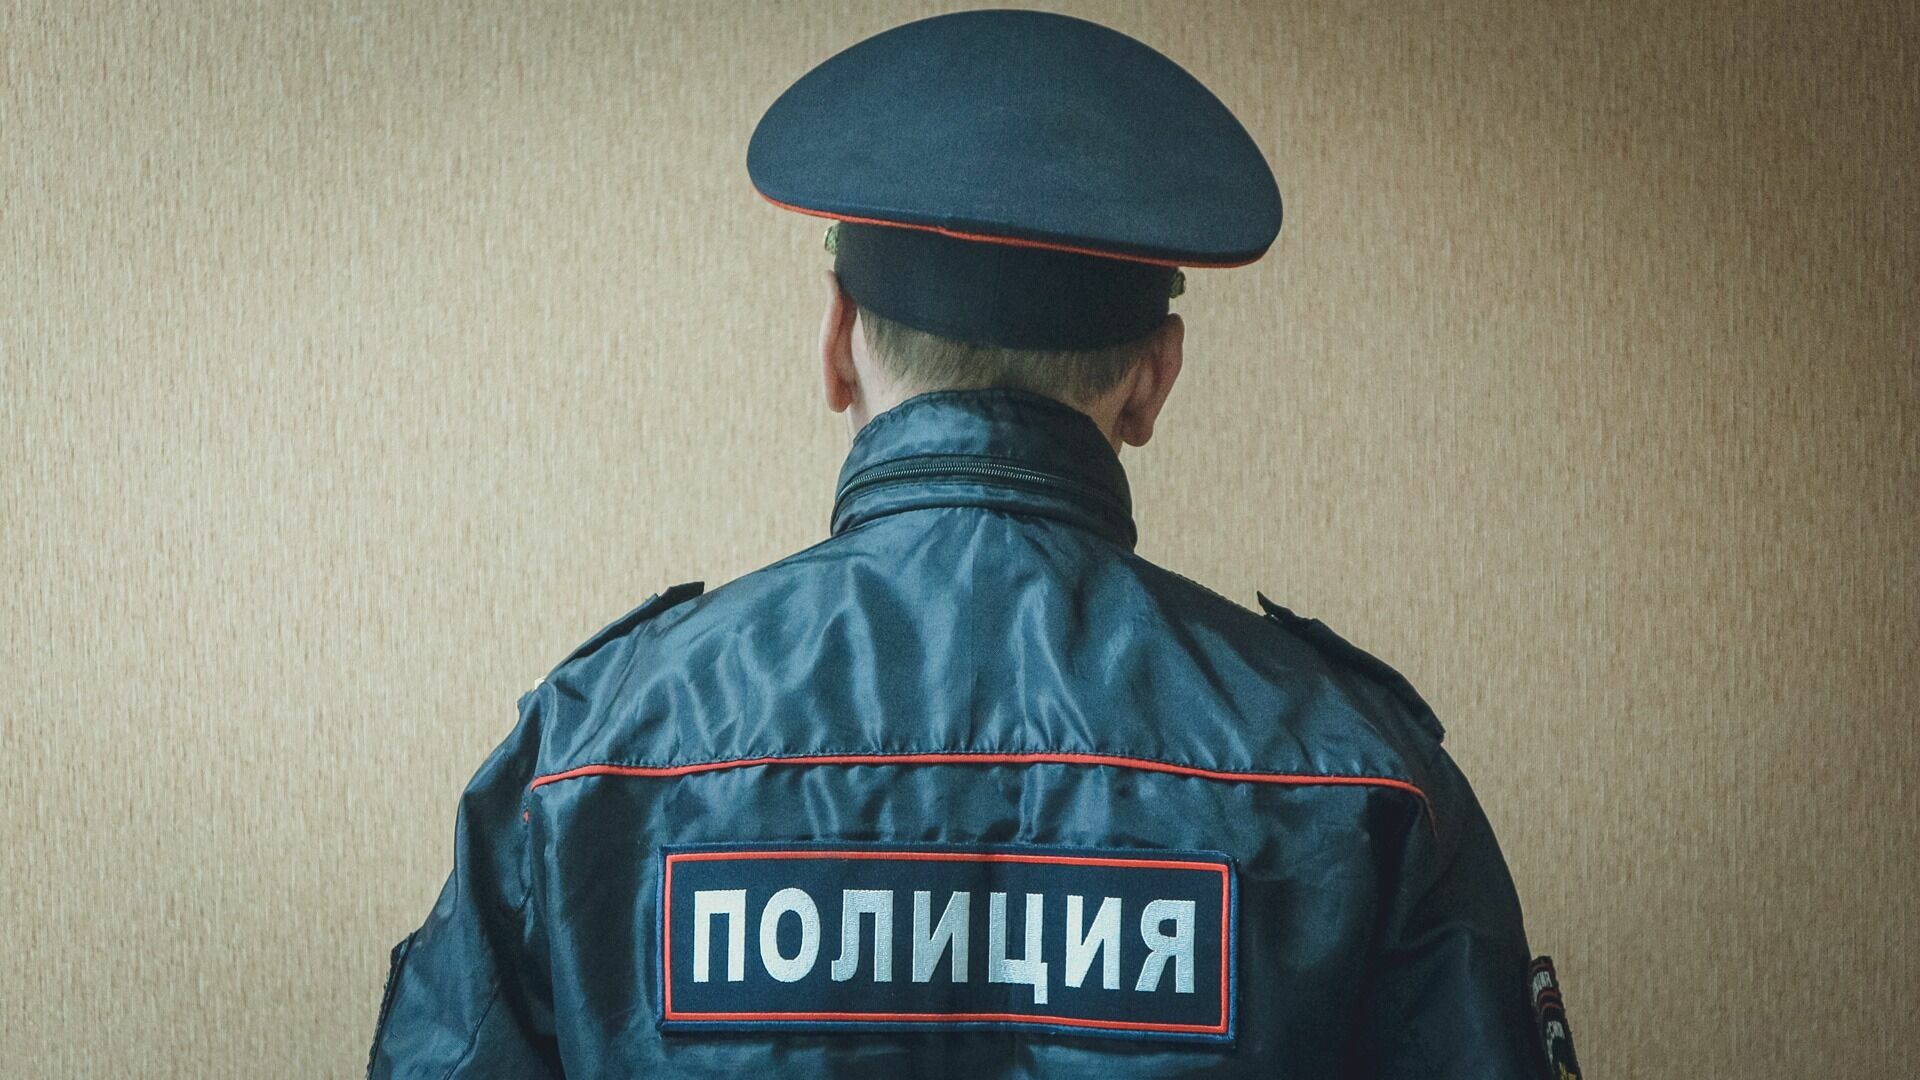 Полиция прокомментировала жалобу белгородца на якобы подделку подписи в автосалоне